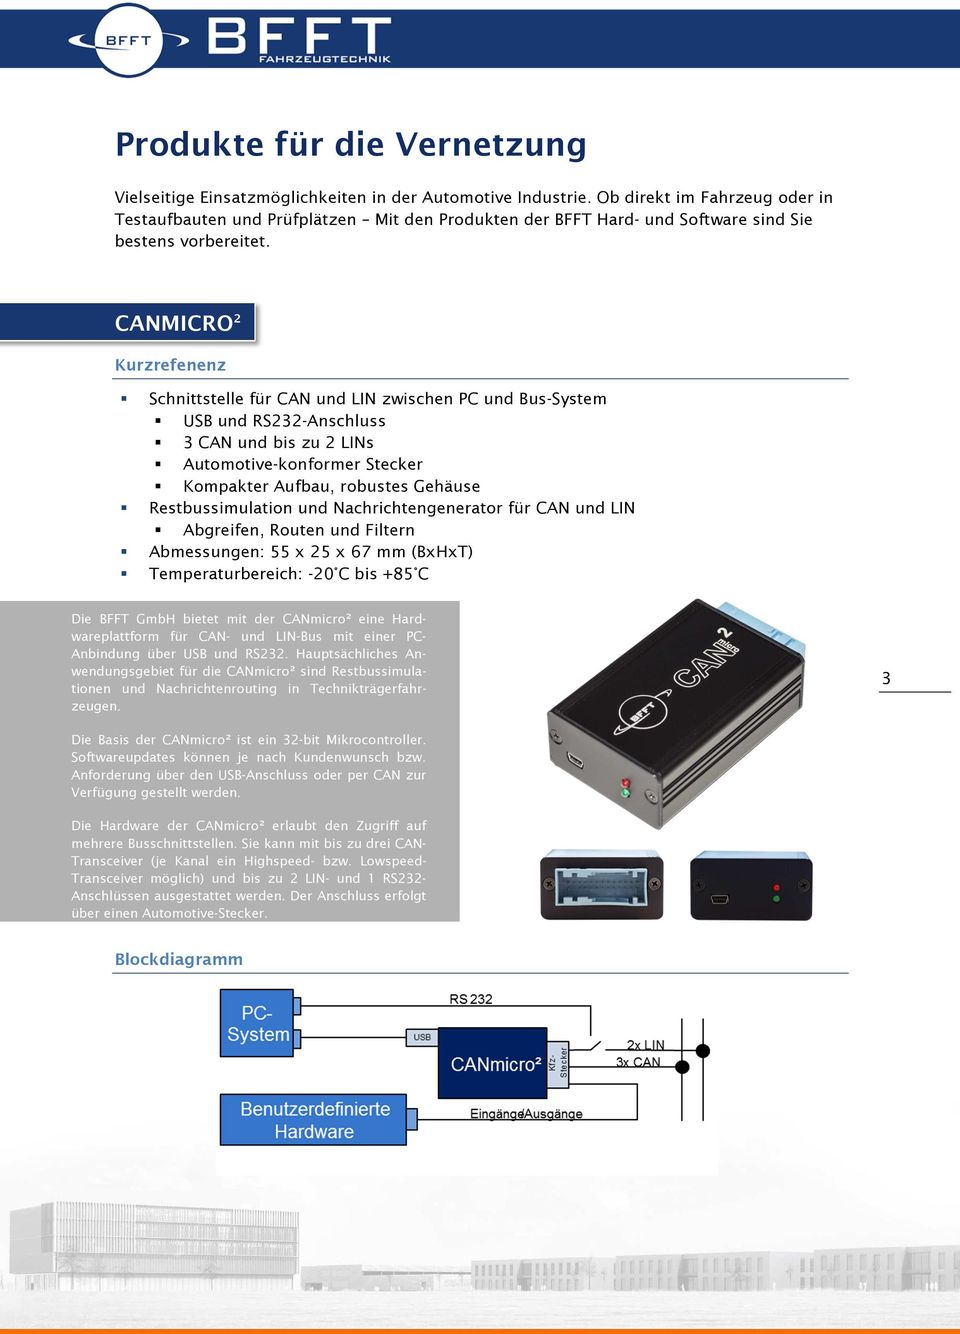 CANMICRO 2 Kurzrefenenz Schnittstelle für CAN und LIN zwischen PC und Bus-System USB und RS232-Anschluss 3 CAN und bis zu 2 LINs Automotive-konformer Stecker Kompakter Aufbau, robustes Gehäuse